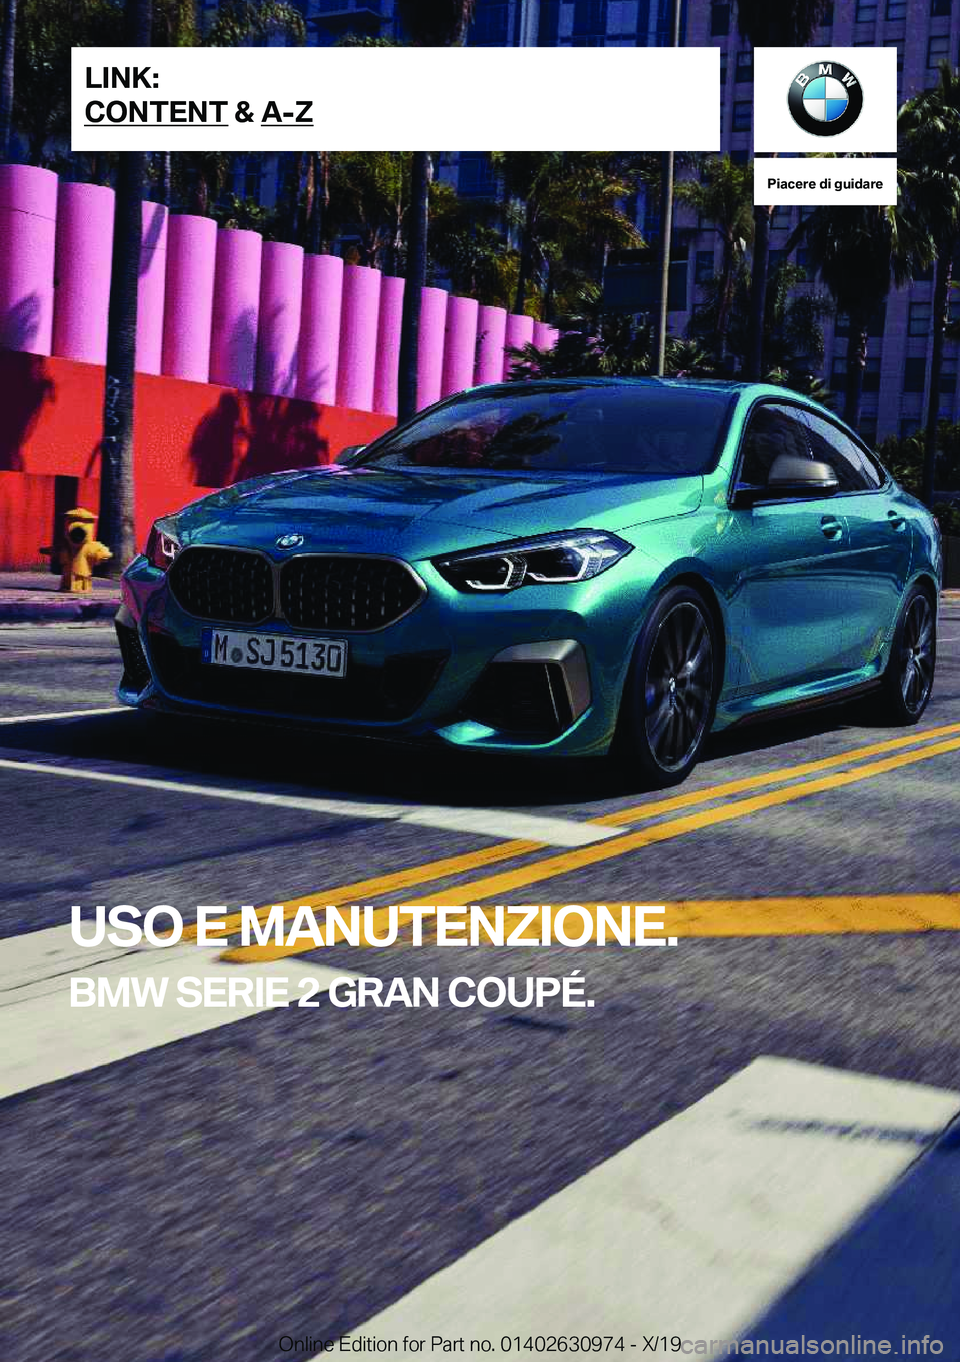 BMW 2 SERIES GRAN COUPE 2020  Libretti Di Uso E manutenzione (in Italian) �P�i�a�c�e�r�e��d�i��g�u�i�d�a�r�e
�U�S�O��E��M�A�N�U�T�E�N�Z�I�O�N�E�.
�B�M�W��S�E�R�I�E��2��G�R�A�N��C�O�U�P�